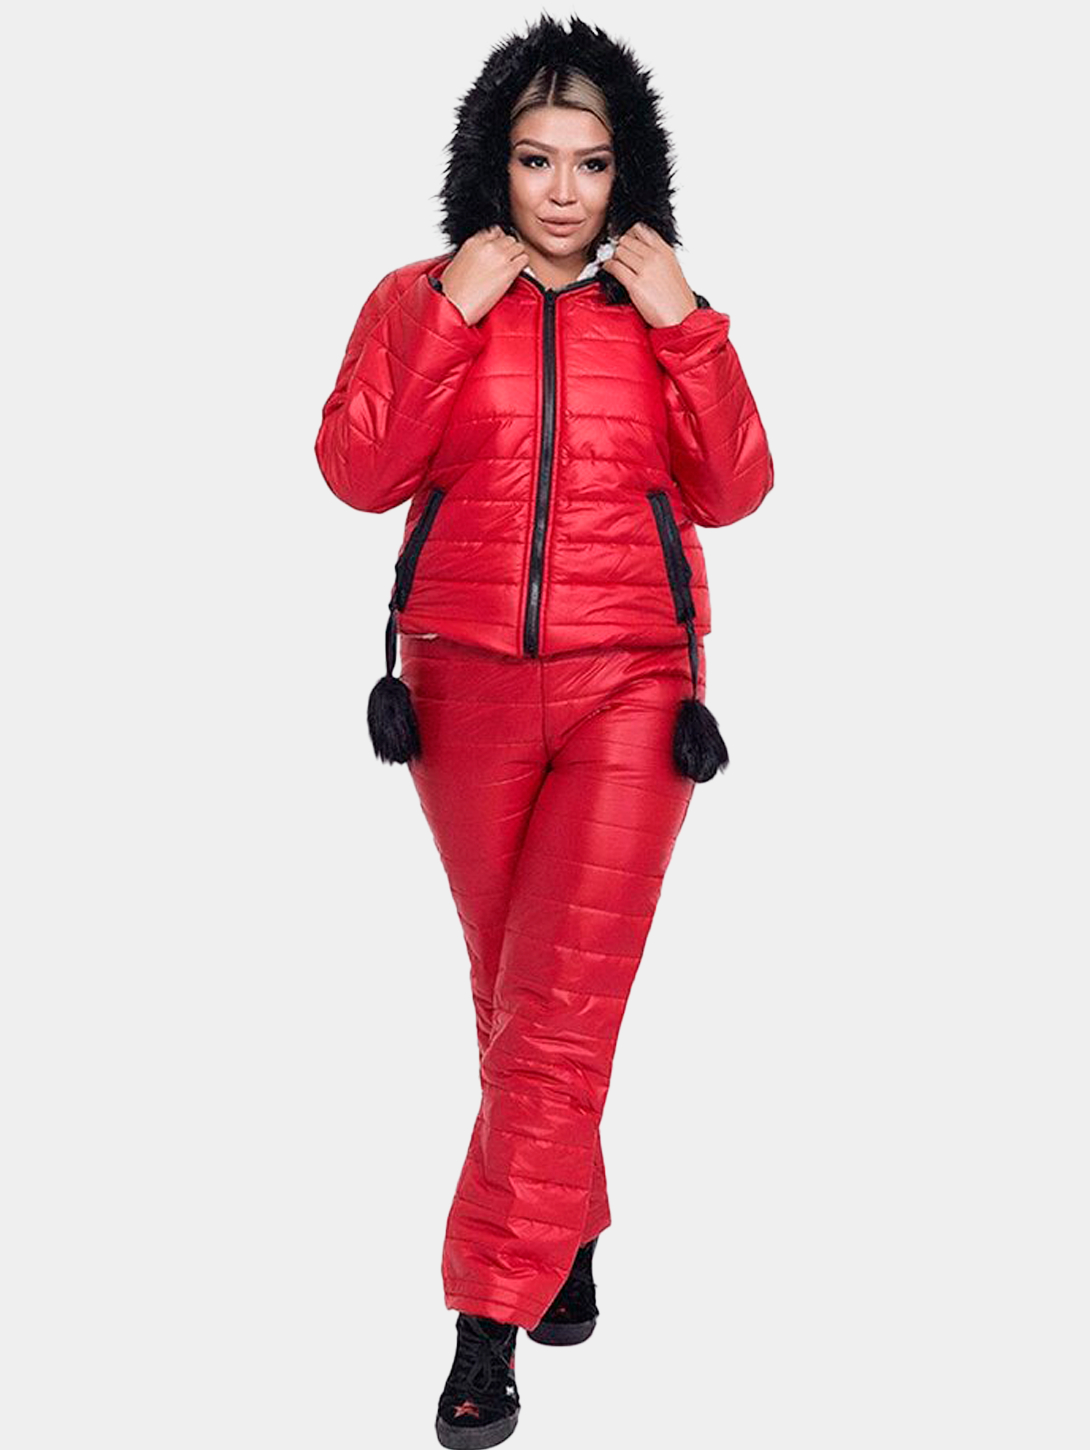 Женский зимний стеганый костюм с опушкой купить по цене 4999 ₽ винтернет-магазине KazanExpress